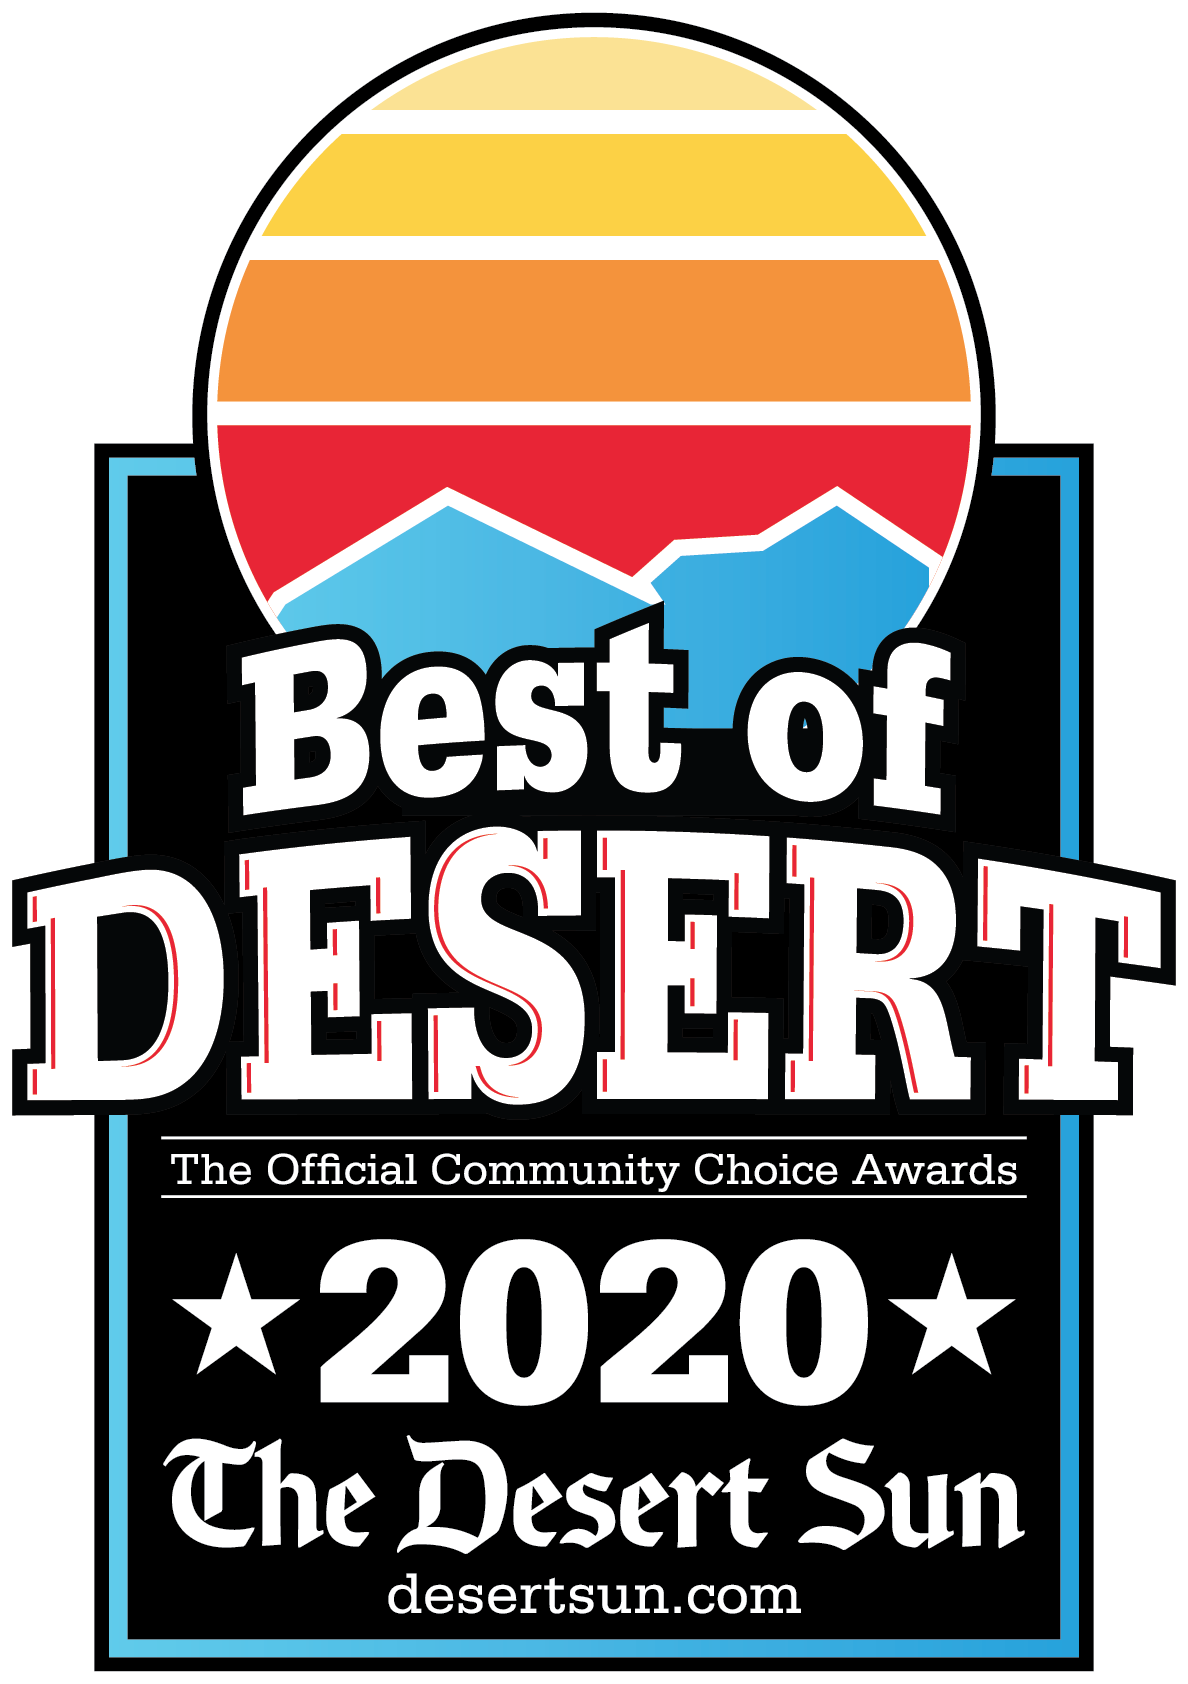 The Desert Sun | Best of Desert 2020 Award